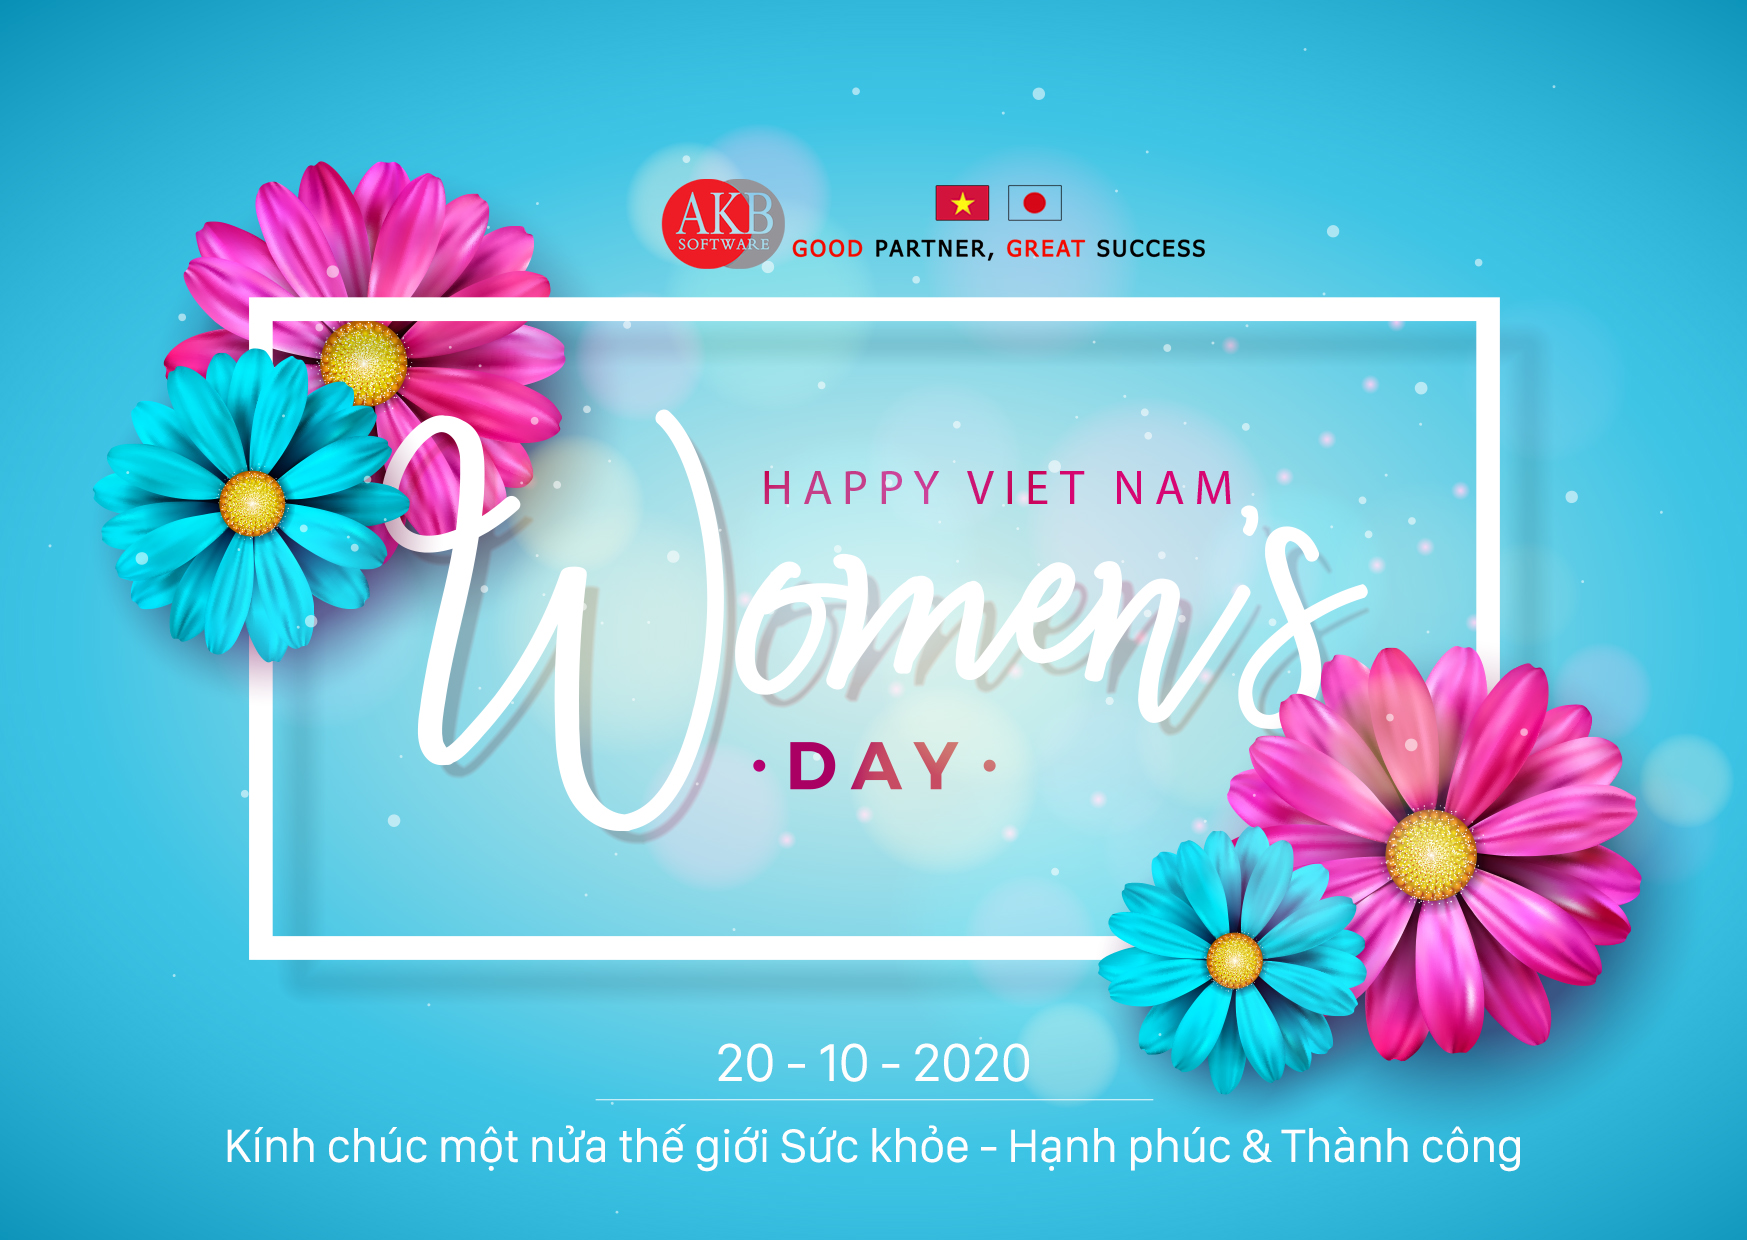 Chúc mừng ngày Phụ nữ Việt Nam 20-10